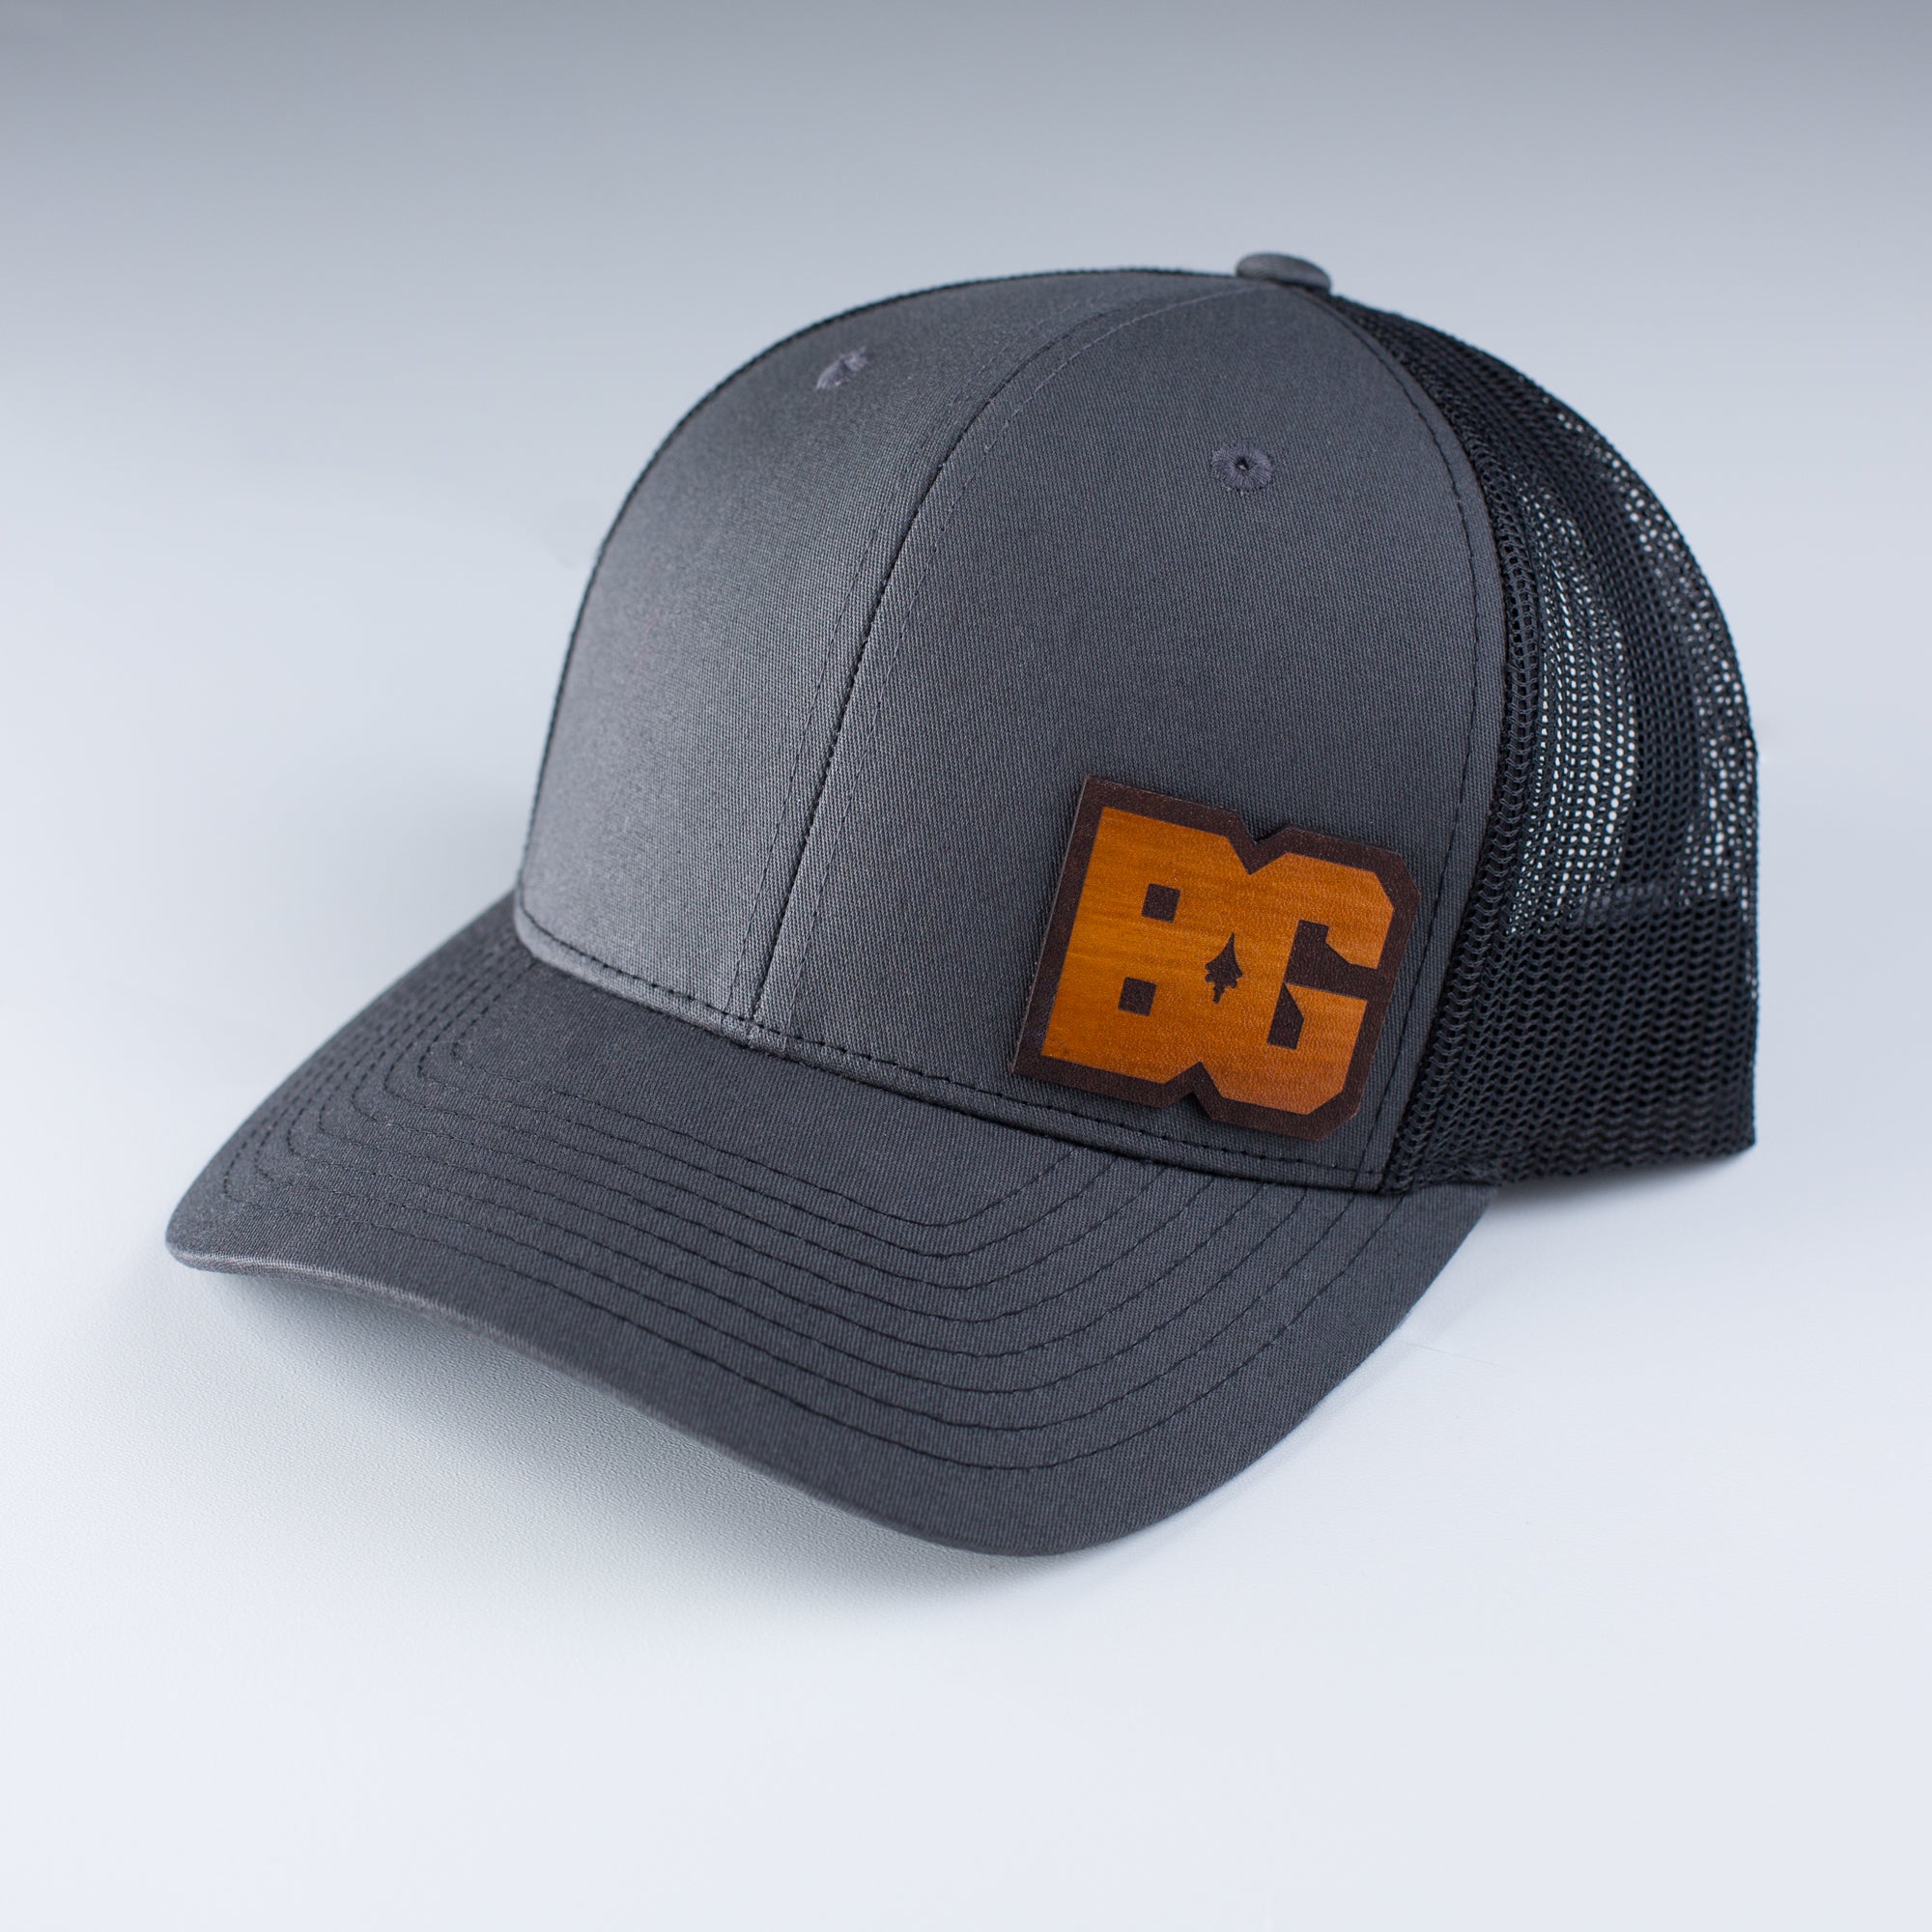 BG Hat